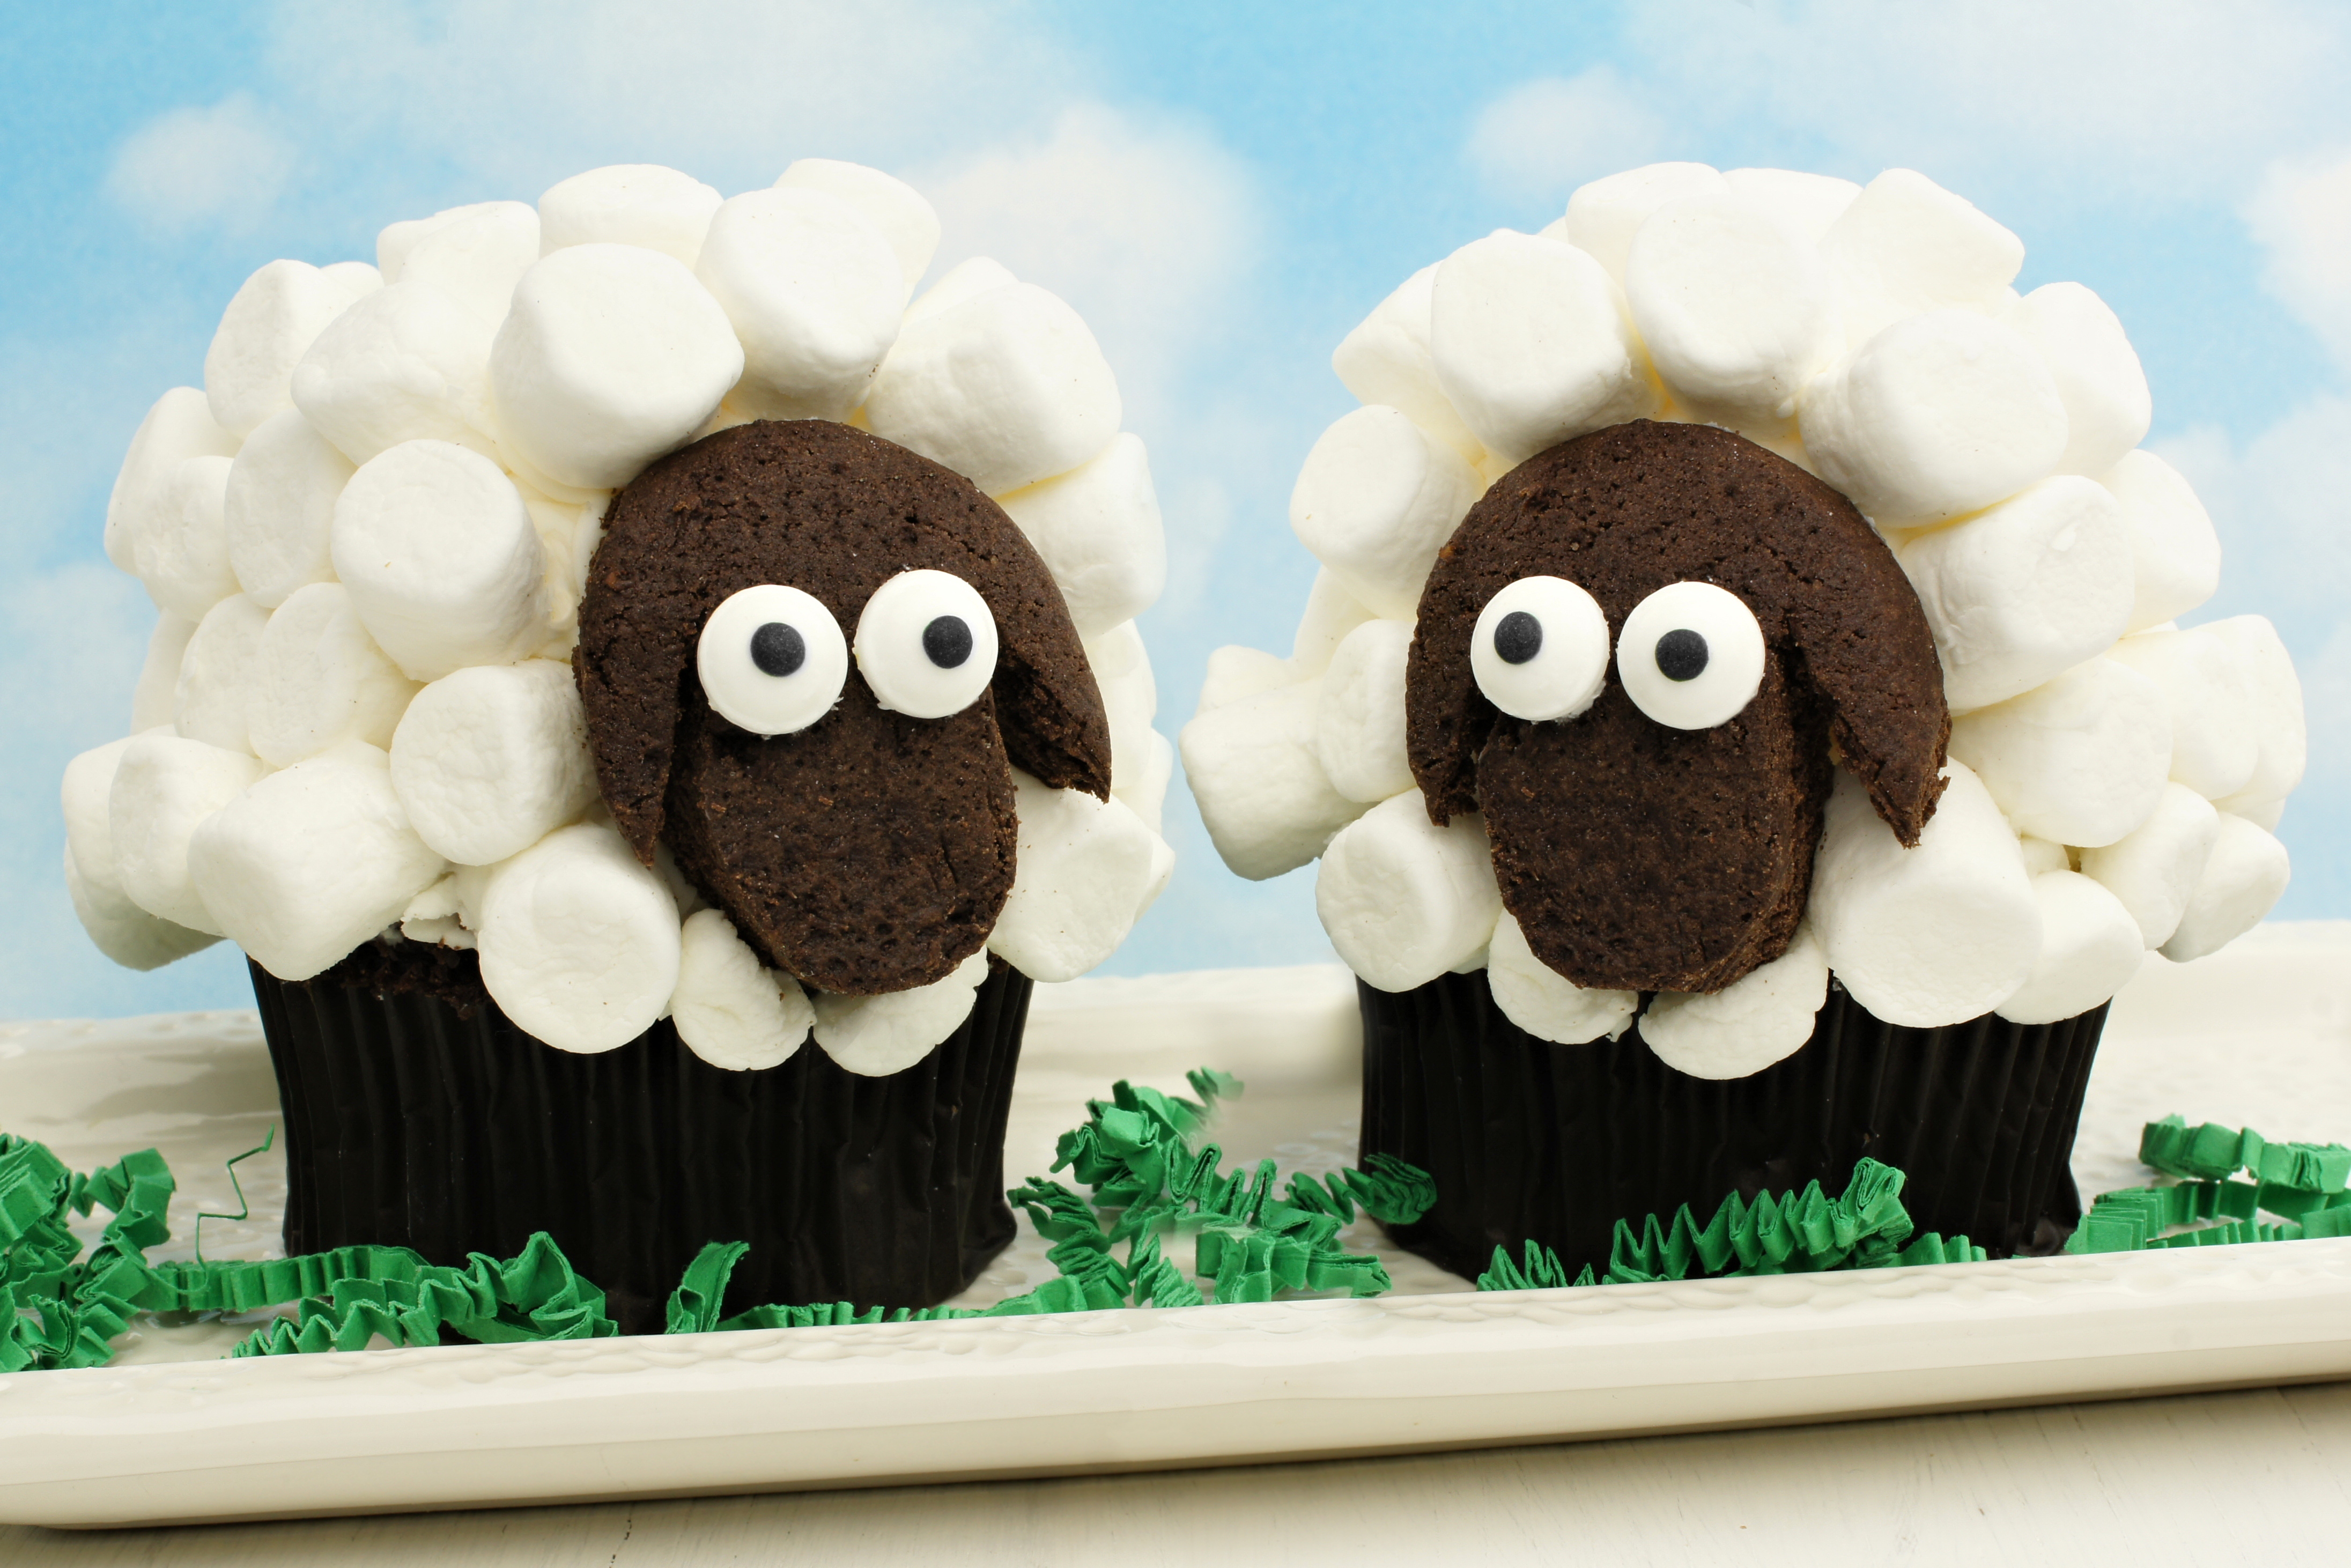 Dolci di Pasqua per bambini, i cupcakes pecorella